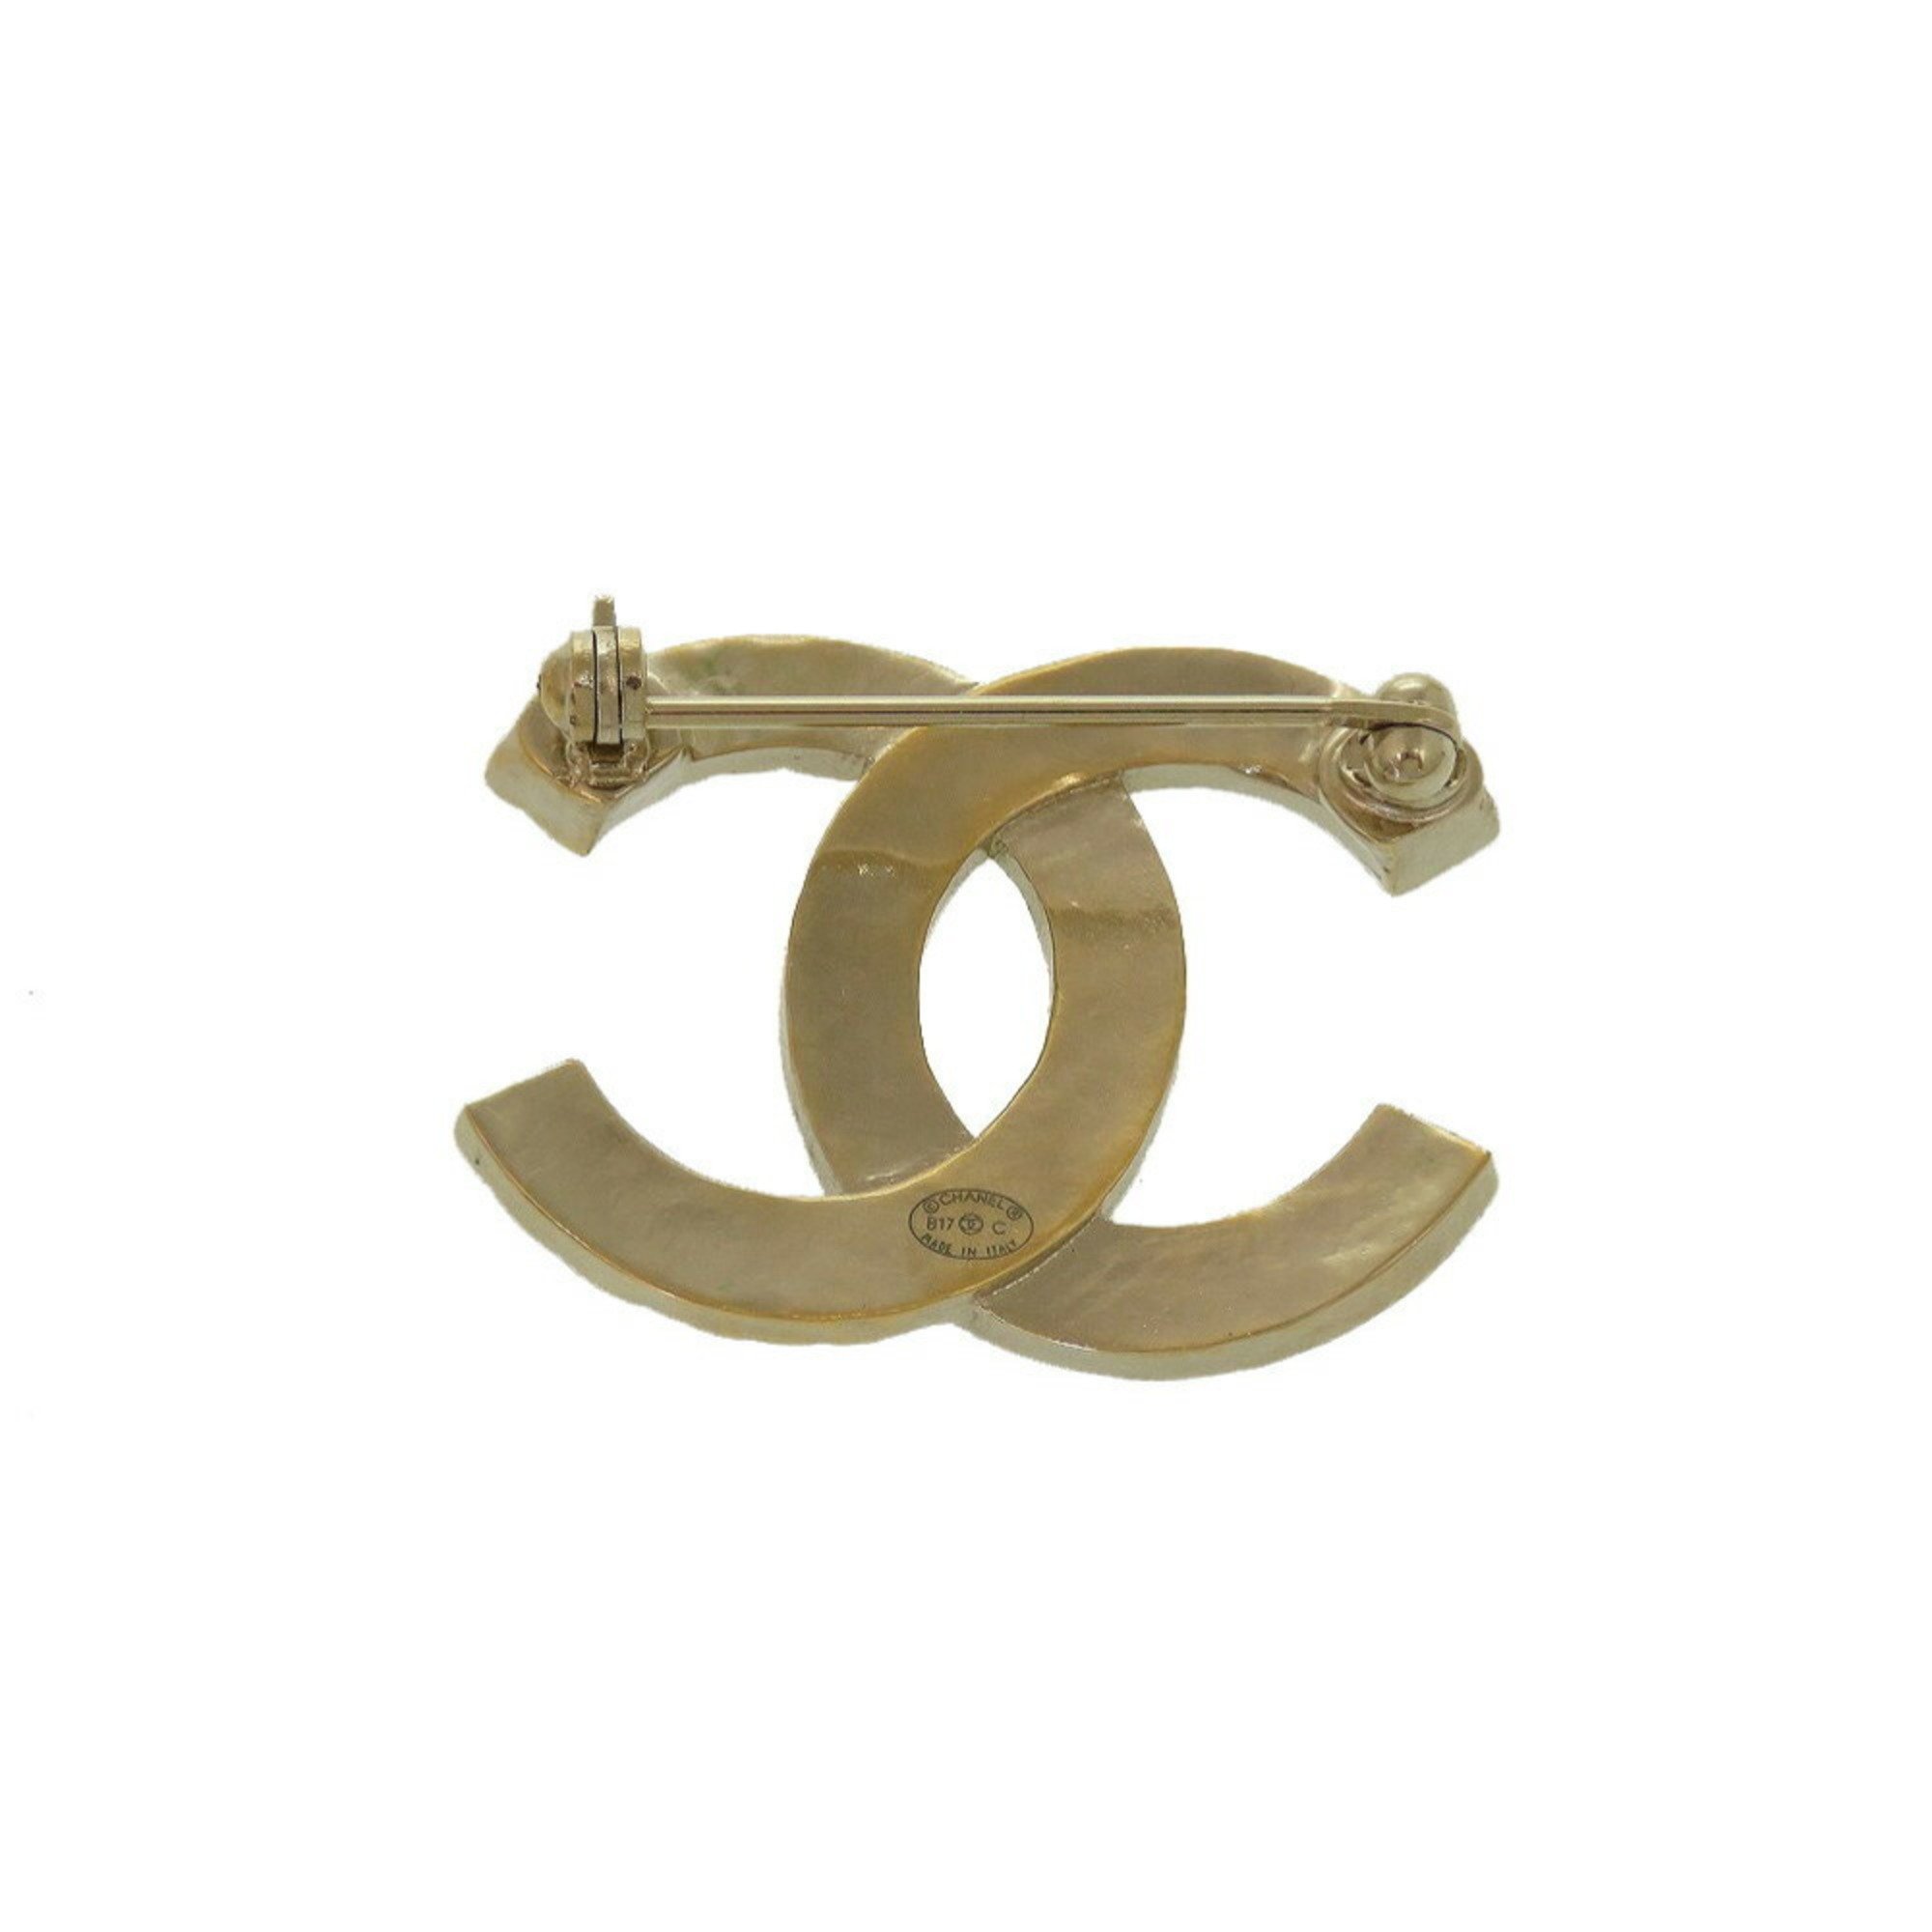 Chanel Coco Mark B17C Rhinestone Gold Brooch 0183 CHANEL